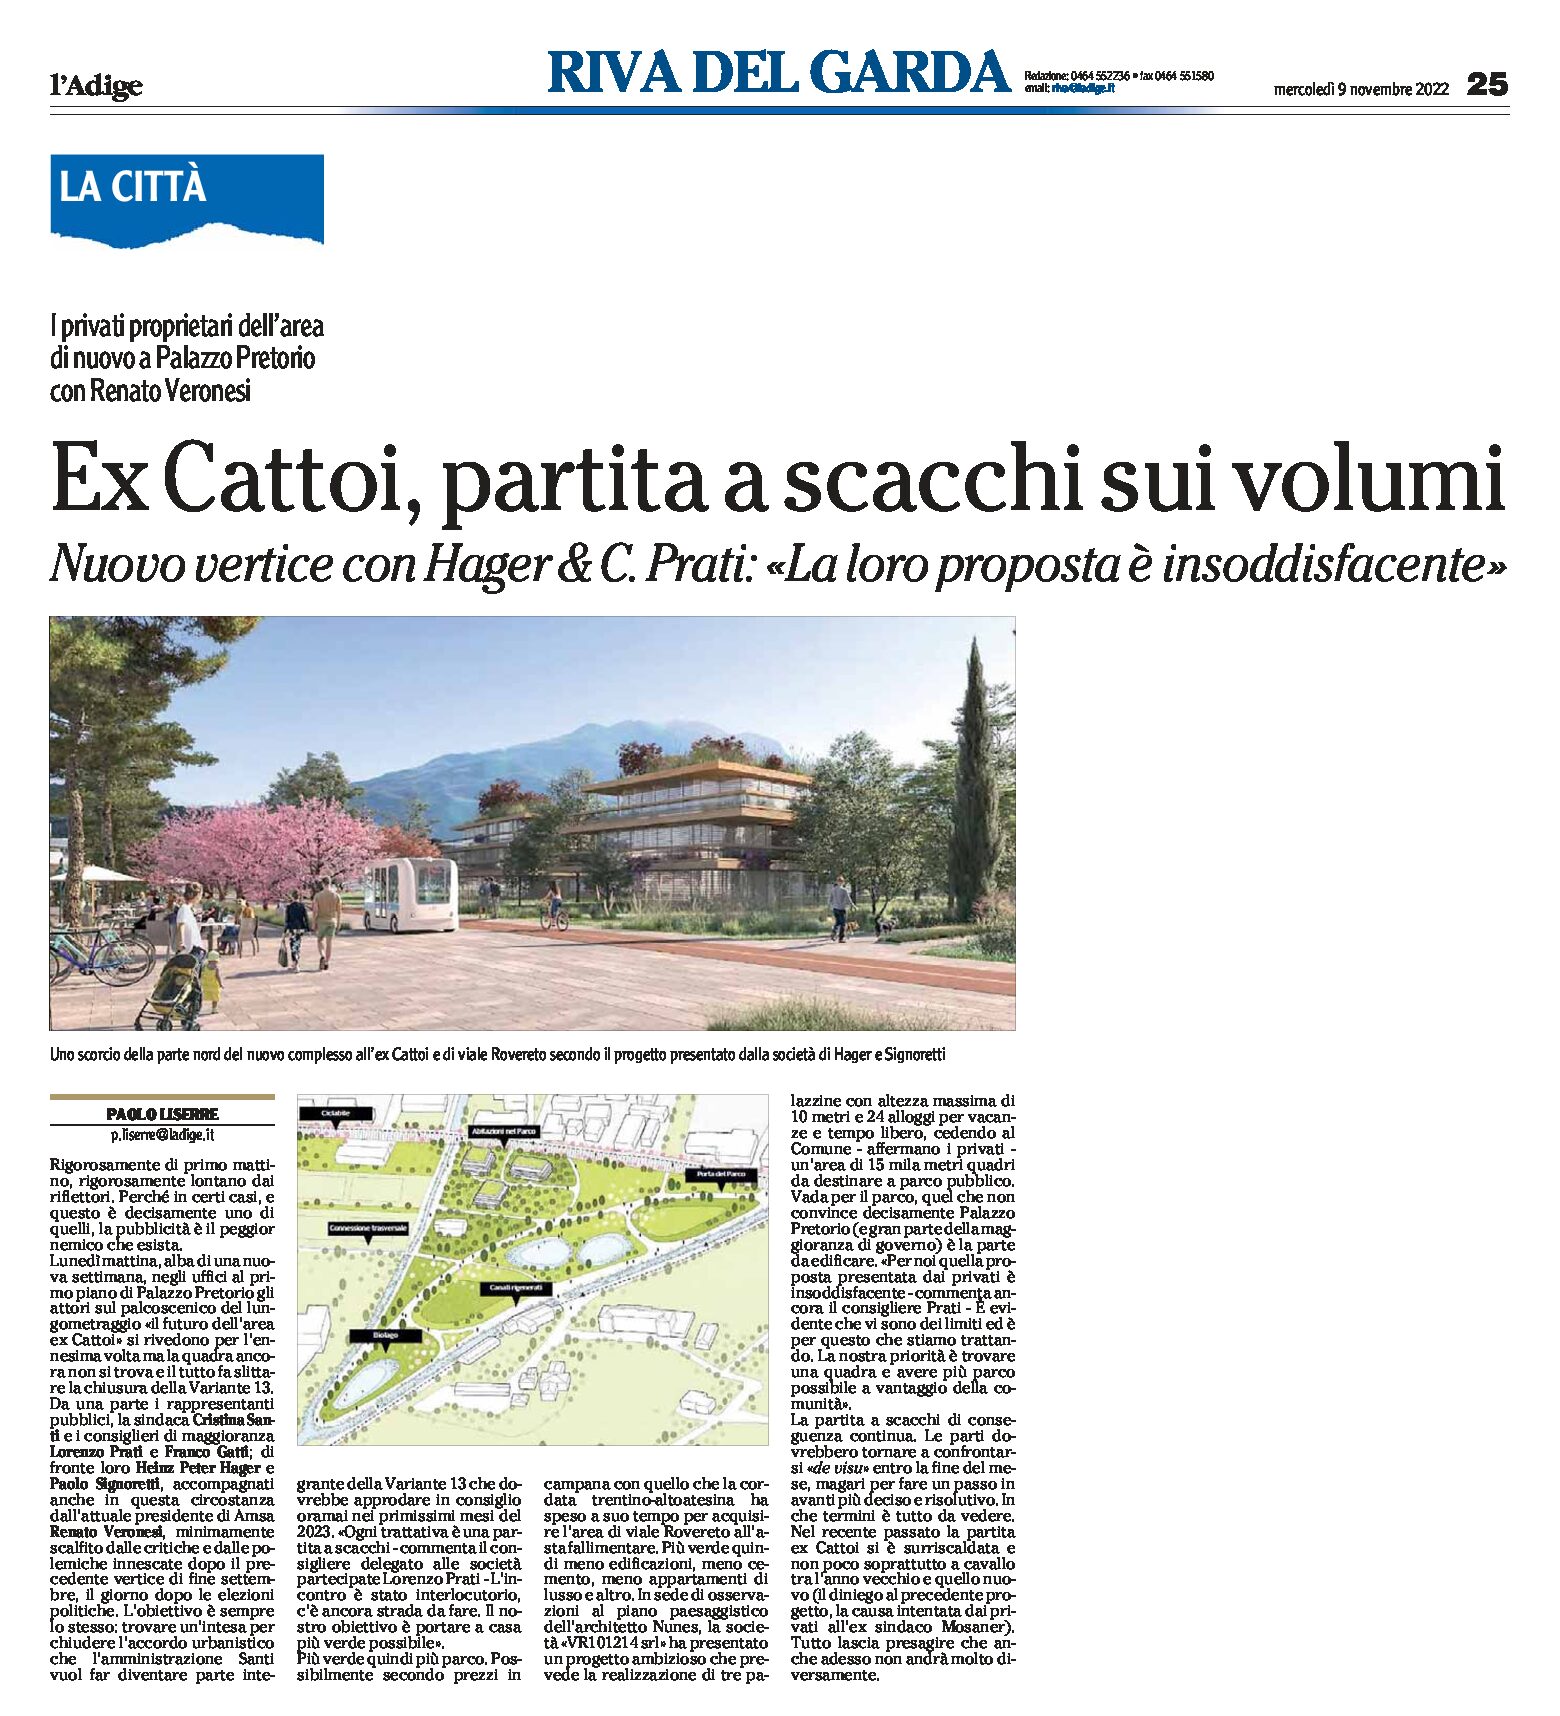 Riva, ex Cattoi: nuovo vertice con Hager & C. Prati “proposta insoddisfacente”